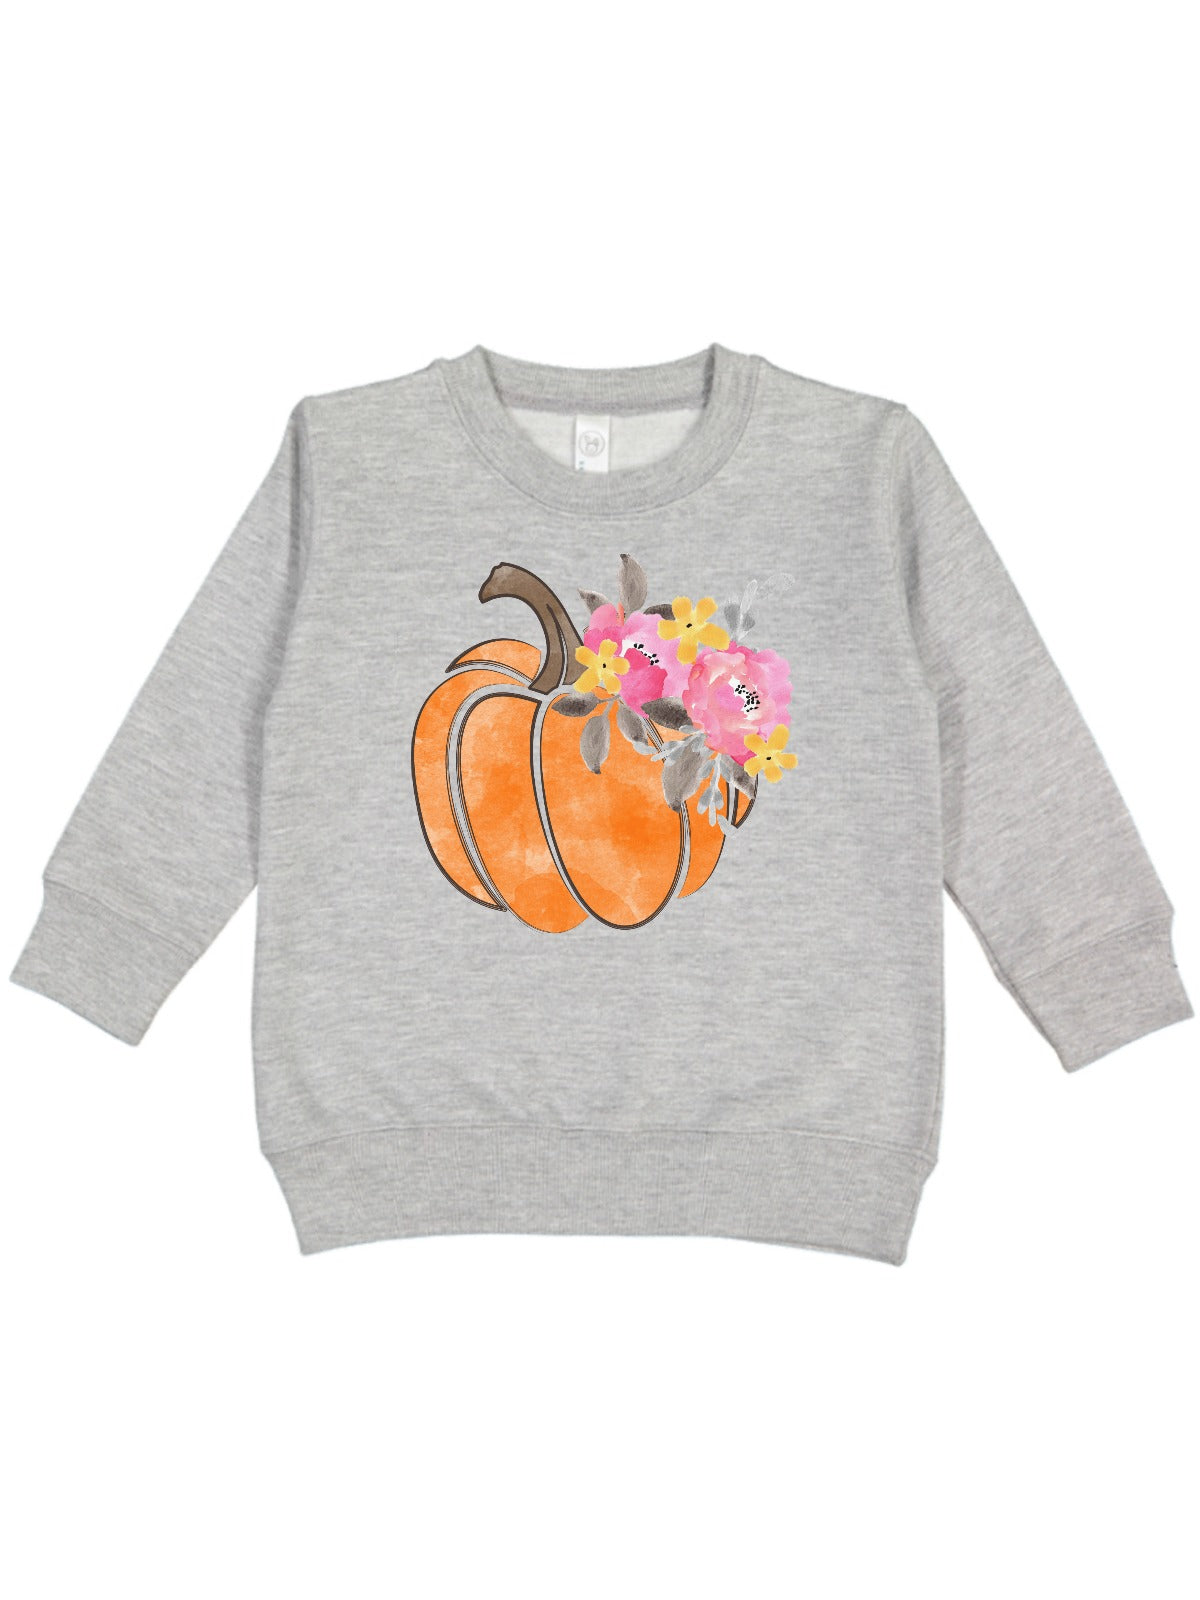 kids fall clothes floral pumpkin shirt